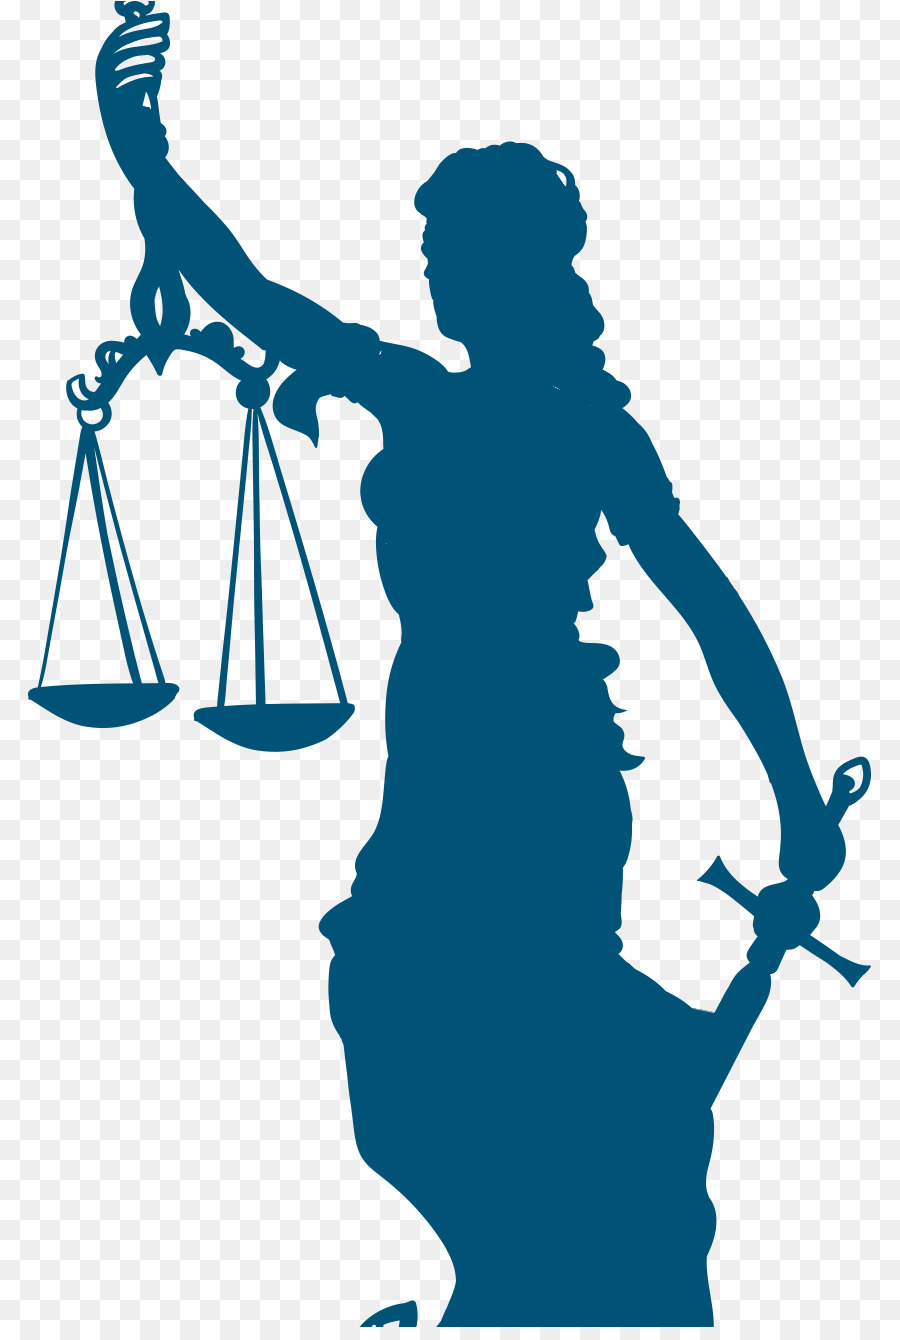 Signora Corte Di Giustizia Di Legge Magistratura - dea